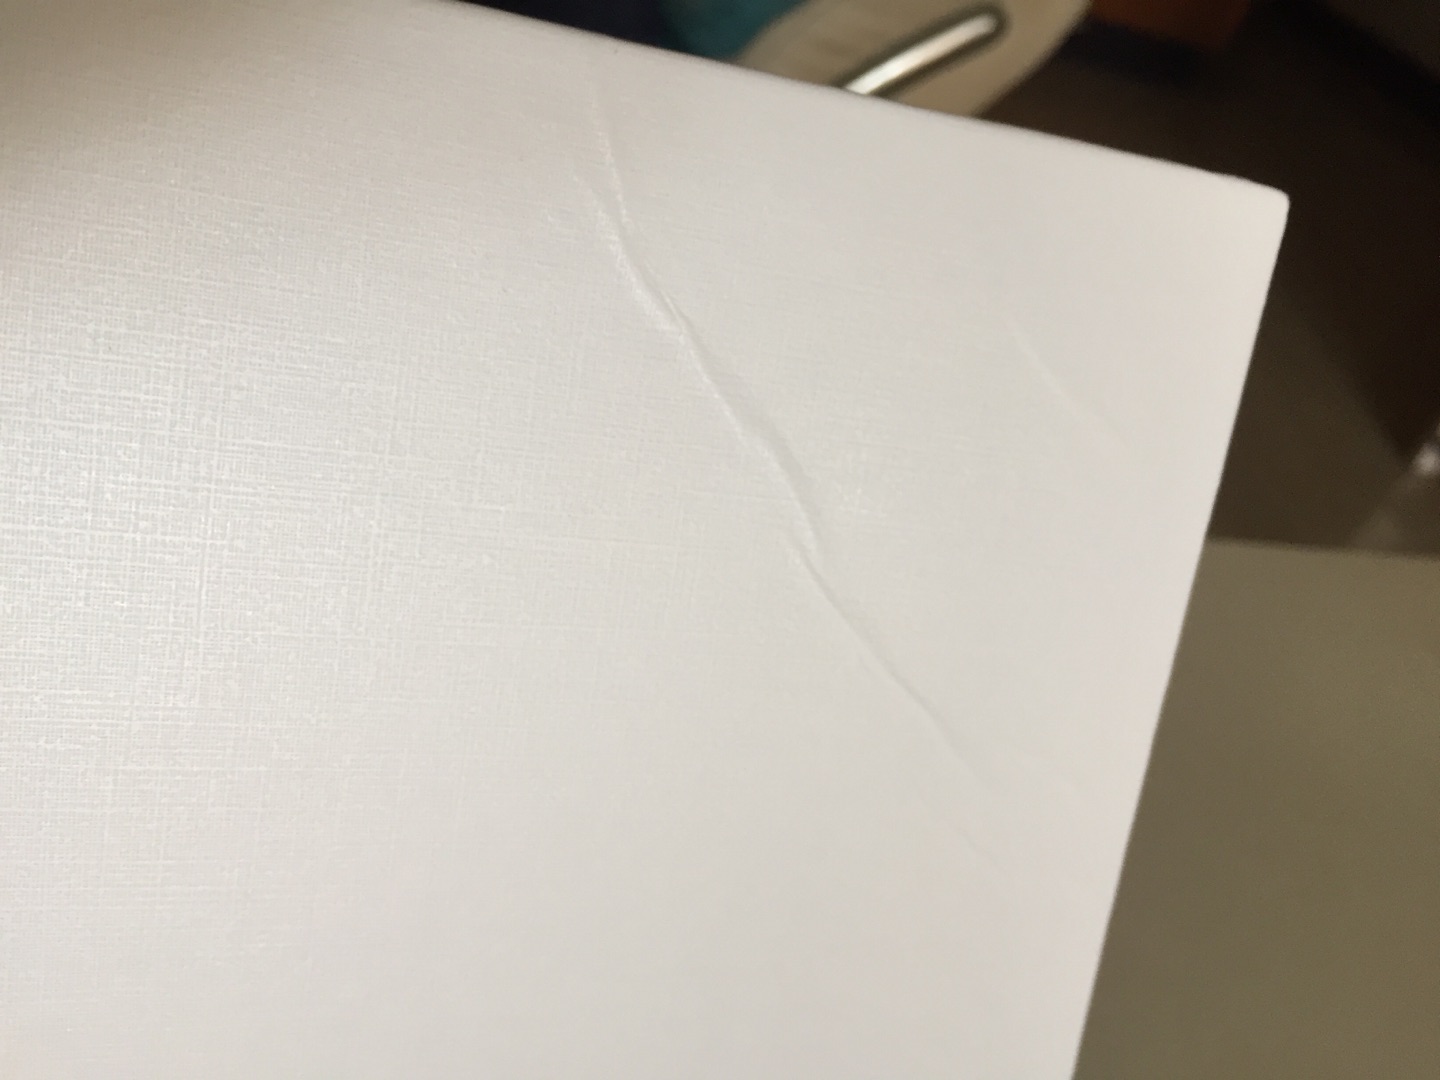 纸质很不错，但是书的封皮，内硬纸板封面都有磕碰的伤口，封底有较为明显的折痕，这次没法给五星好评了。